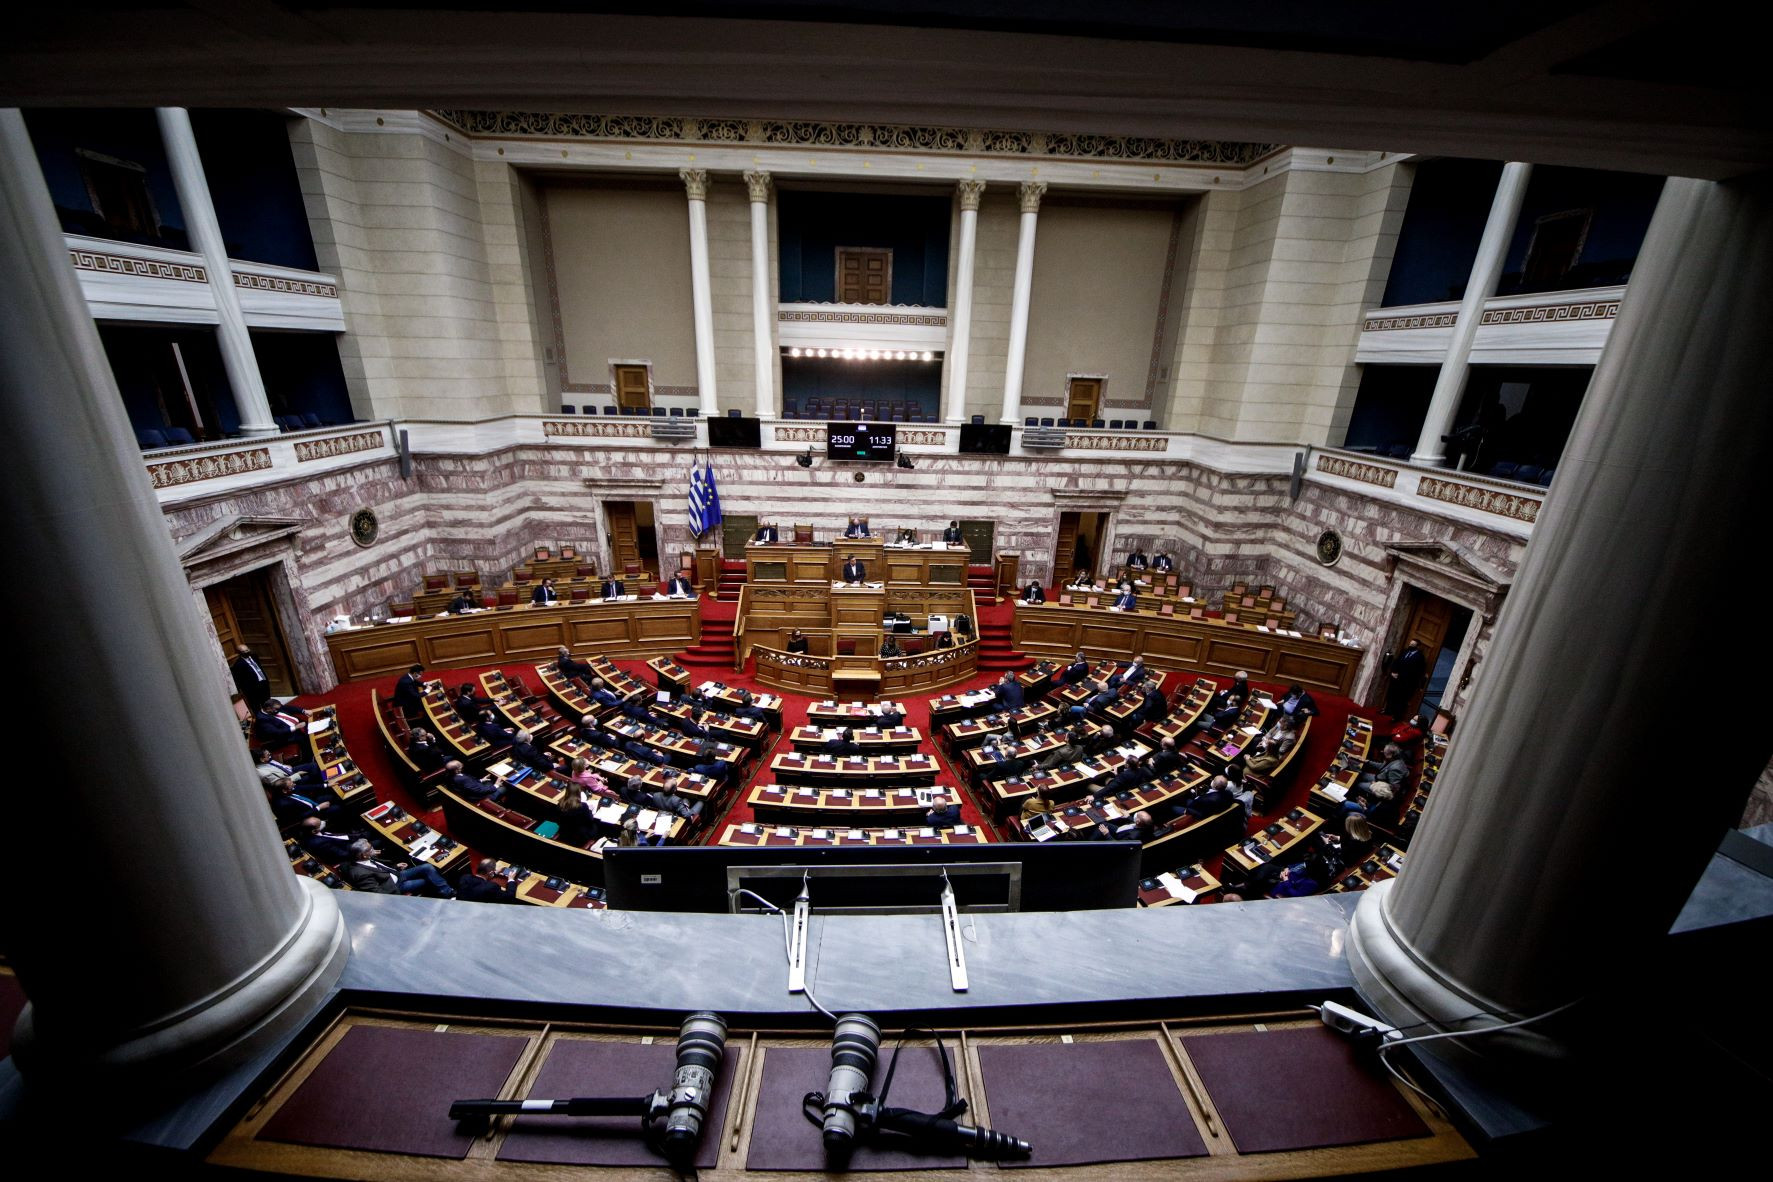 Ψηφίστηκε το νομοσχέδιο για την απολιγνιτοποίηση – Καταψήφισαν τα κόμματα της αντιπολίτευσης